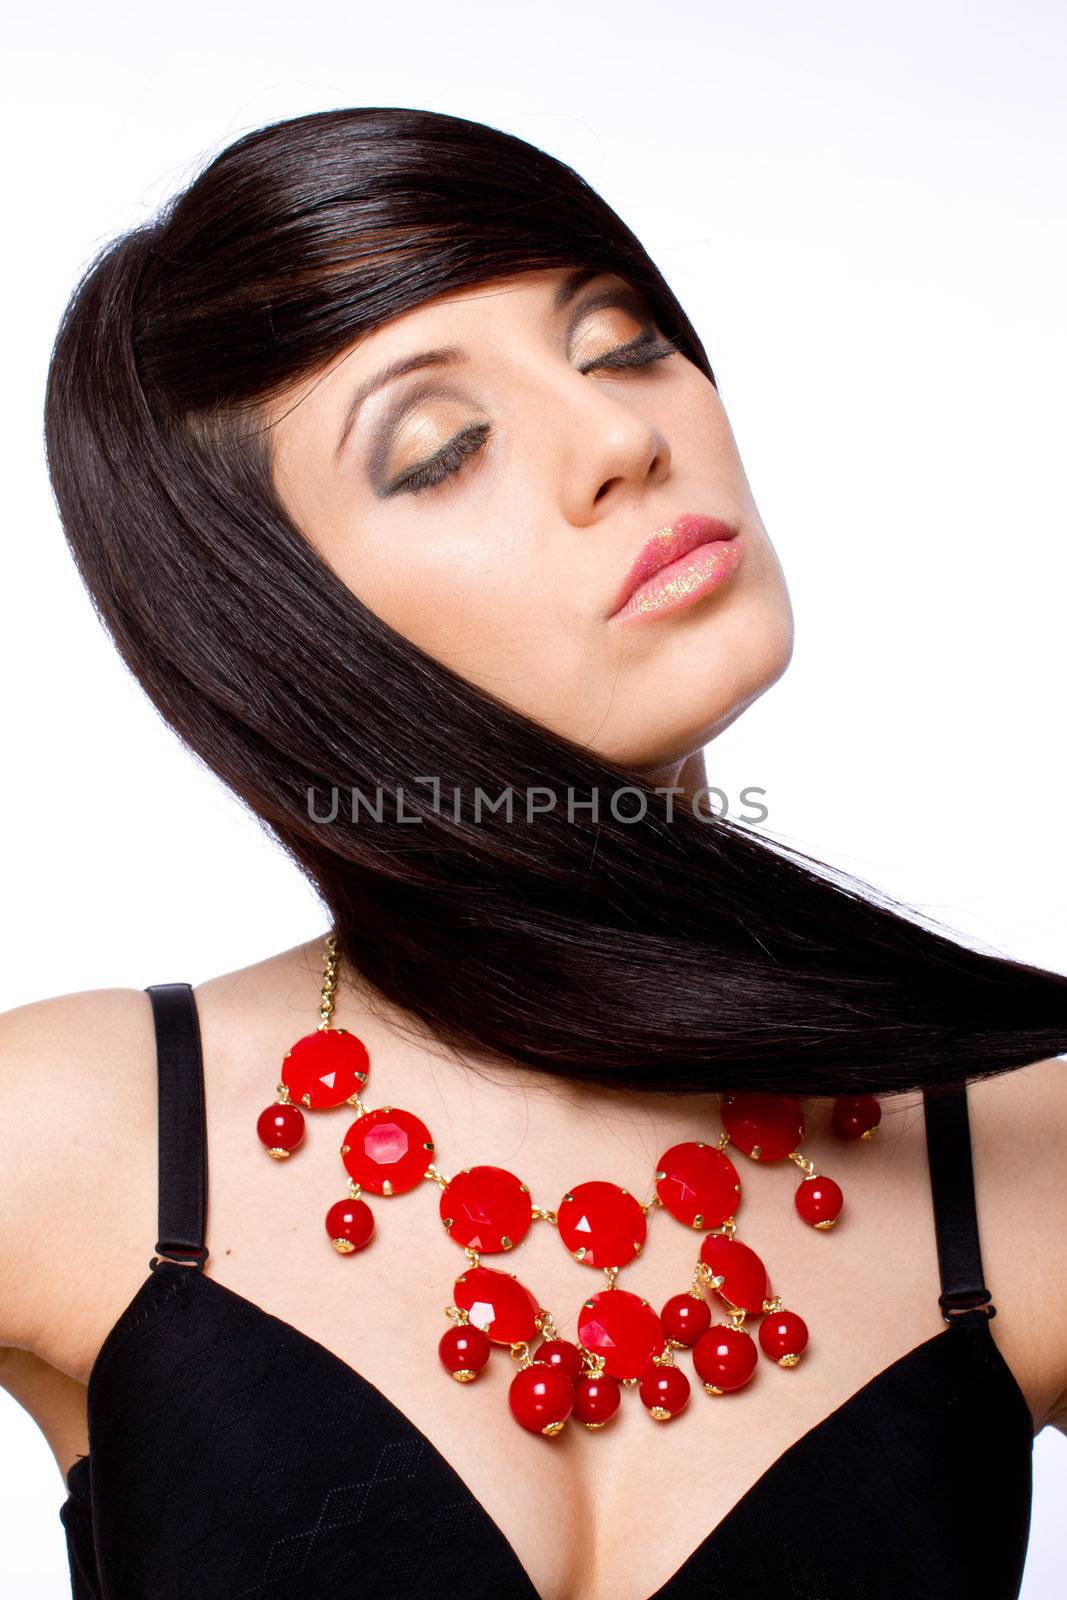 Beautiful fashiom model portrait dark hair with jewelry 